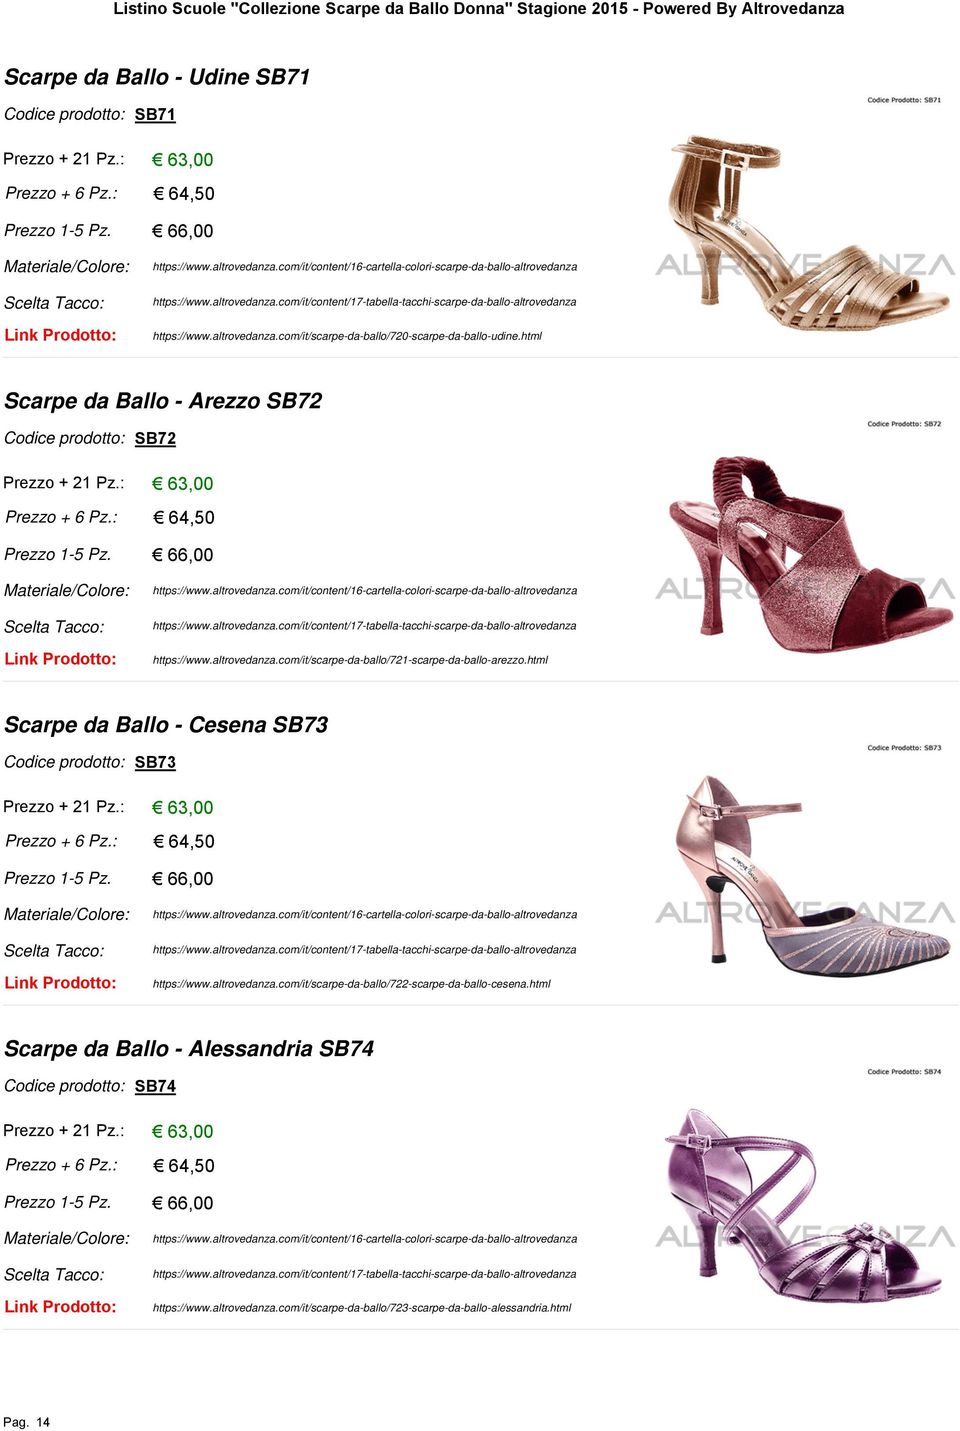 html Scarpe da Ballo - Cesena SB73 SB73 https://www.altrovedanza.com/it/scarpe-da-ballo/722-scarpe-da-ballo-cesena.